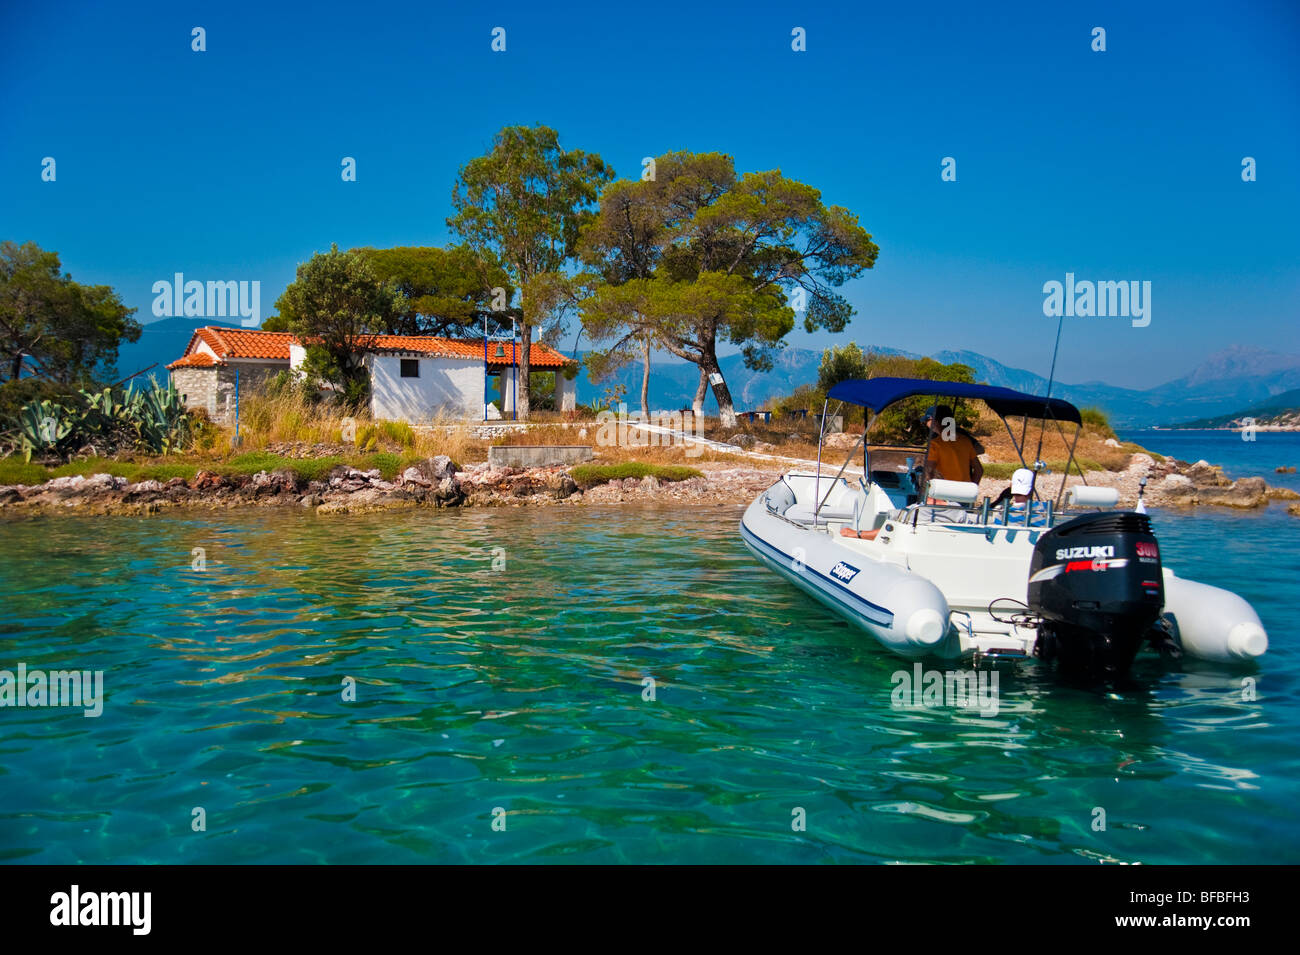 L'ancrage de bateaux gonflables à l'avant de l'île près de Poros, Grèce Banque D'Images